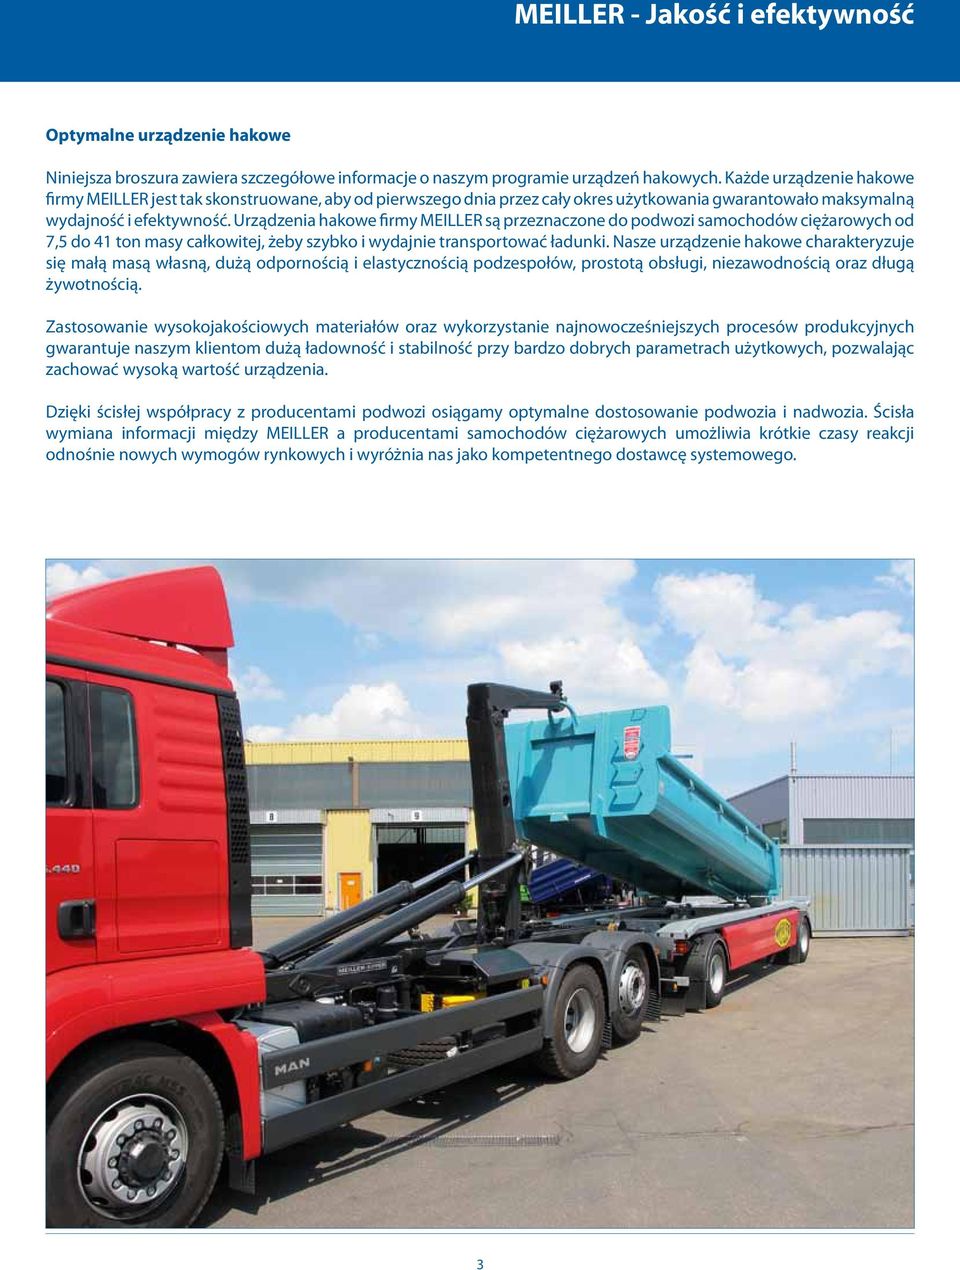 Urządzenia hakowe firmy MEILLER są przeznaczone do podwozi samochodów ciężarowych od 7,5 do 41 ton masy całkowitej, żeby szybko i wydajnie transportować ładunki.